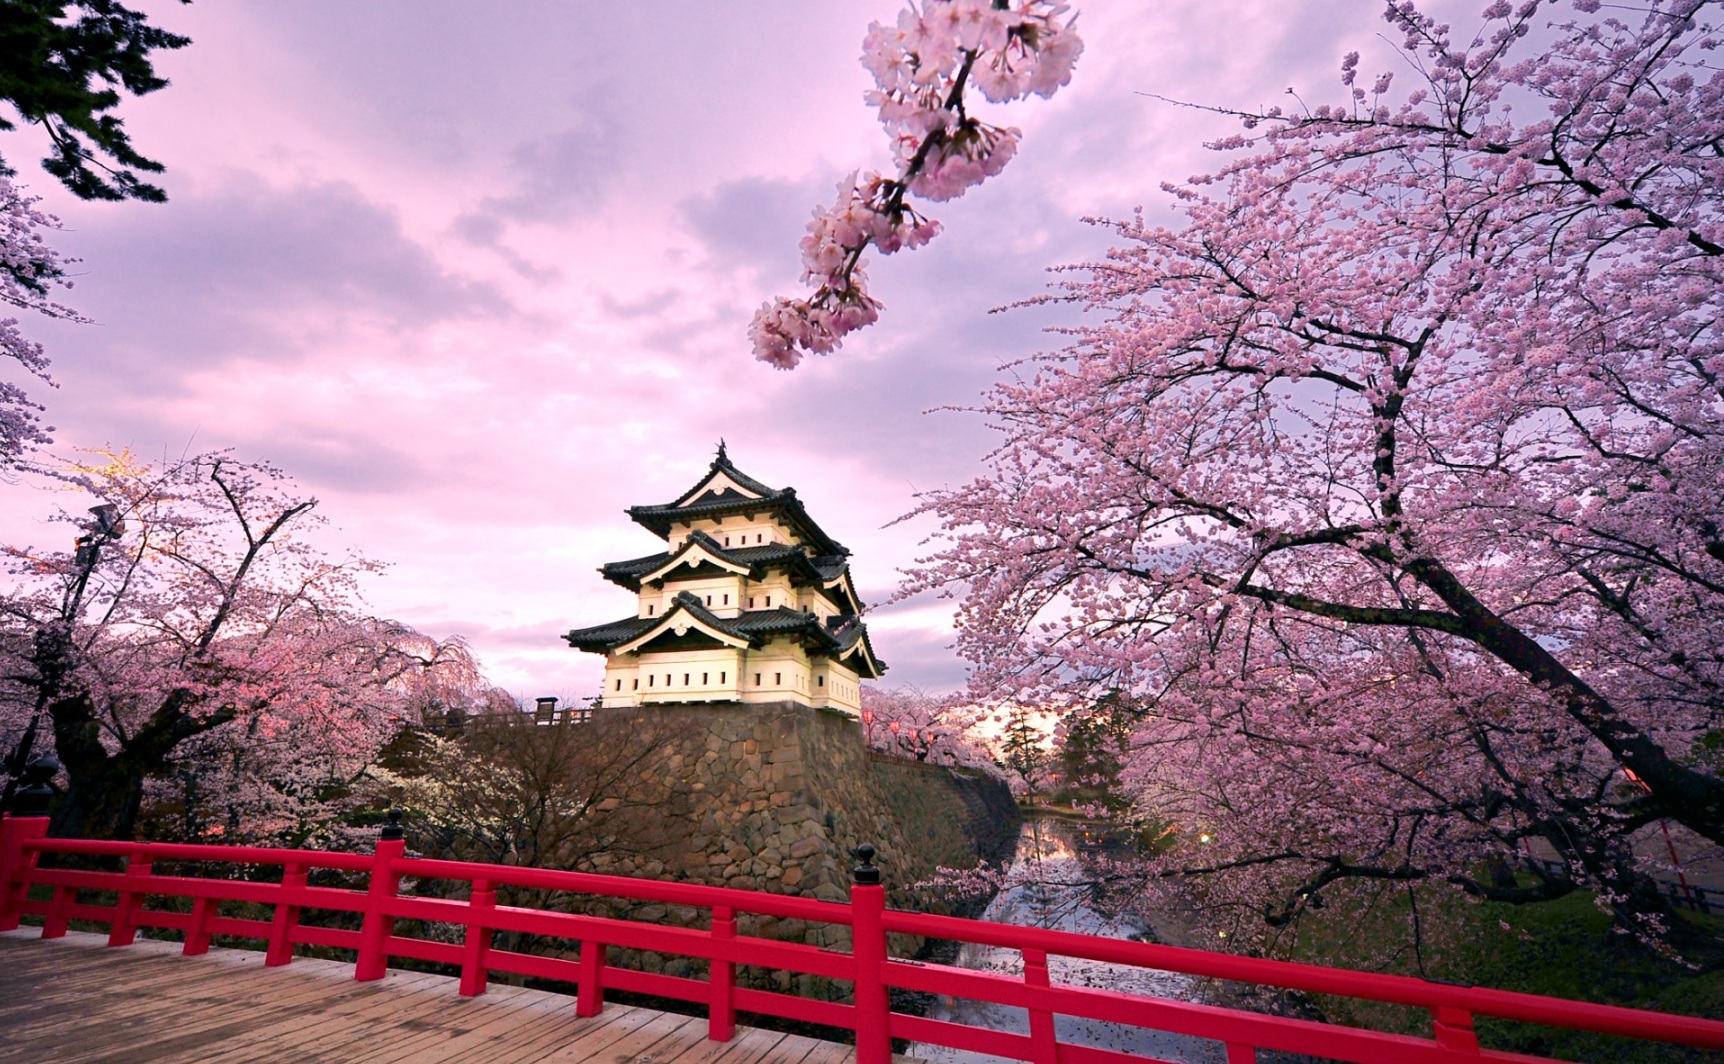 Du lịch Nhật Bản: Nếu bạn muốn khám phá một đất nước hiện đại đầy màu sắc và tràn ngập văn hóa, Nhật Bản là lựa chọn hoàn hảo. Từ đền Sensoji ở Tokyo đến khu vực phố cổ Hội An của Nhật Bản, du lịch Nhật Bản sẽ là một trải nghiệm đáng nhớ trong đời.